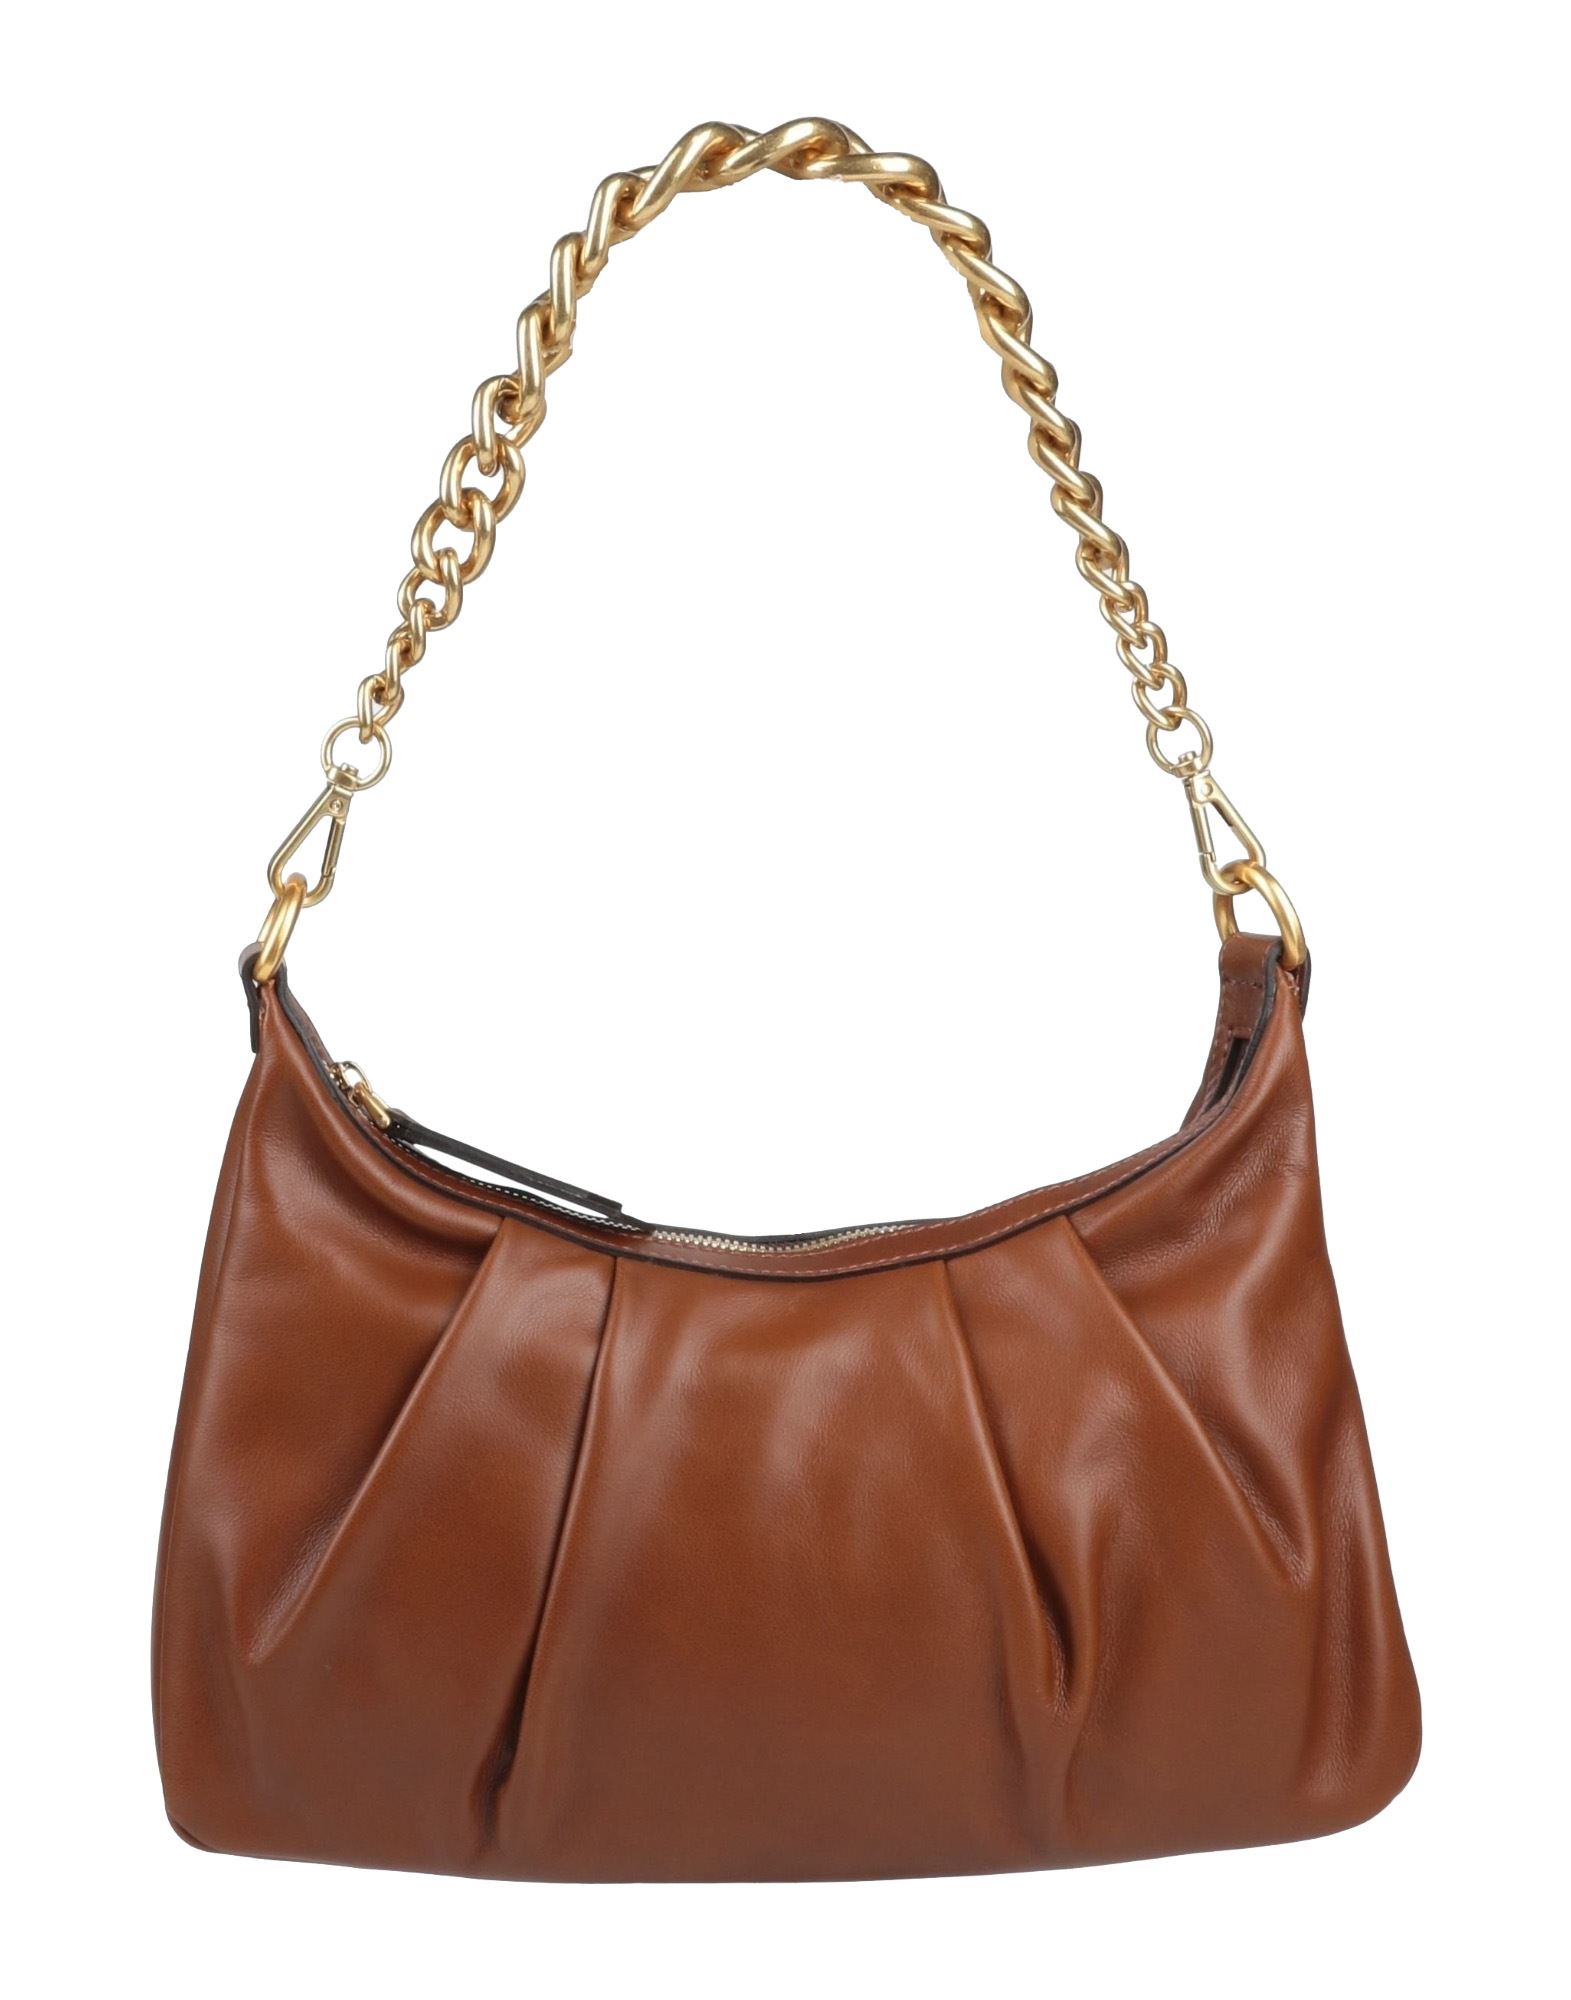 Gianni Chiarini Handbags In Brown